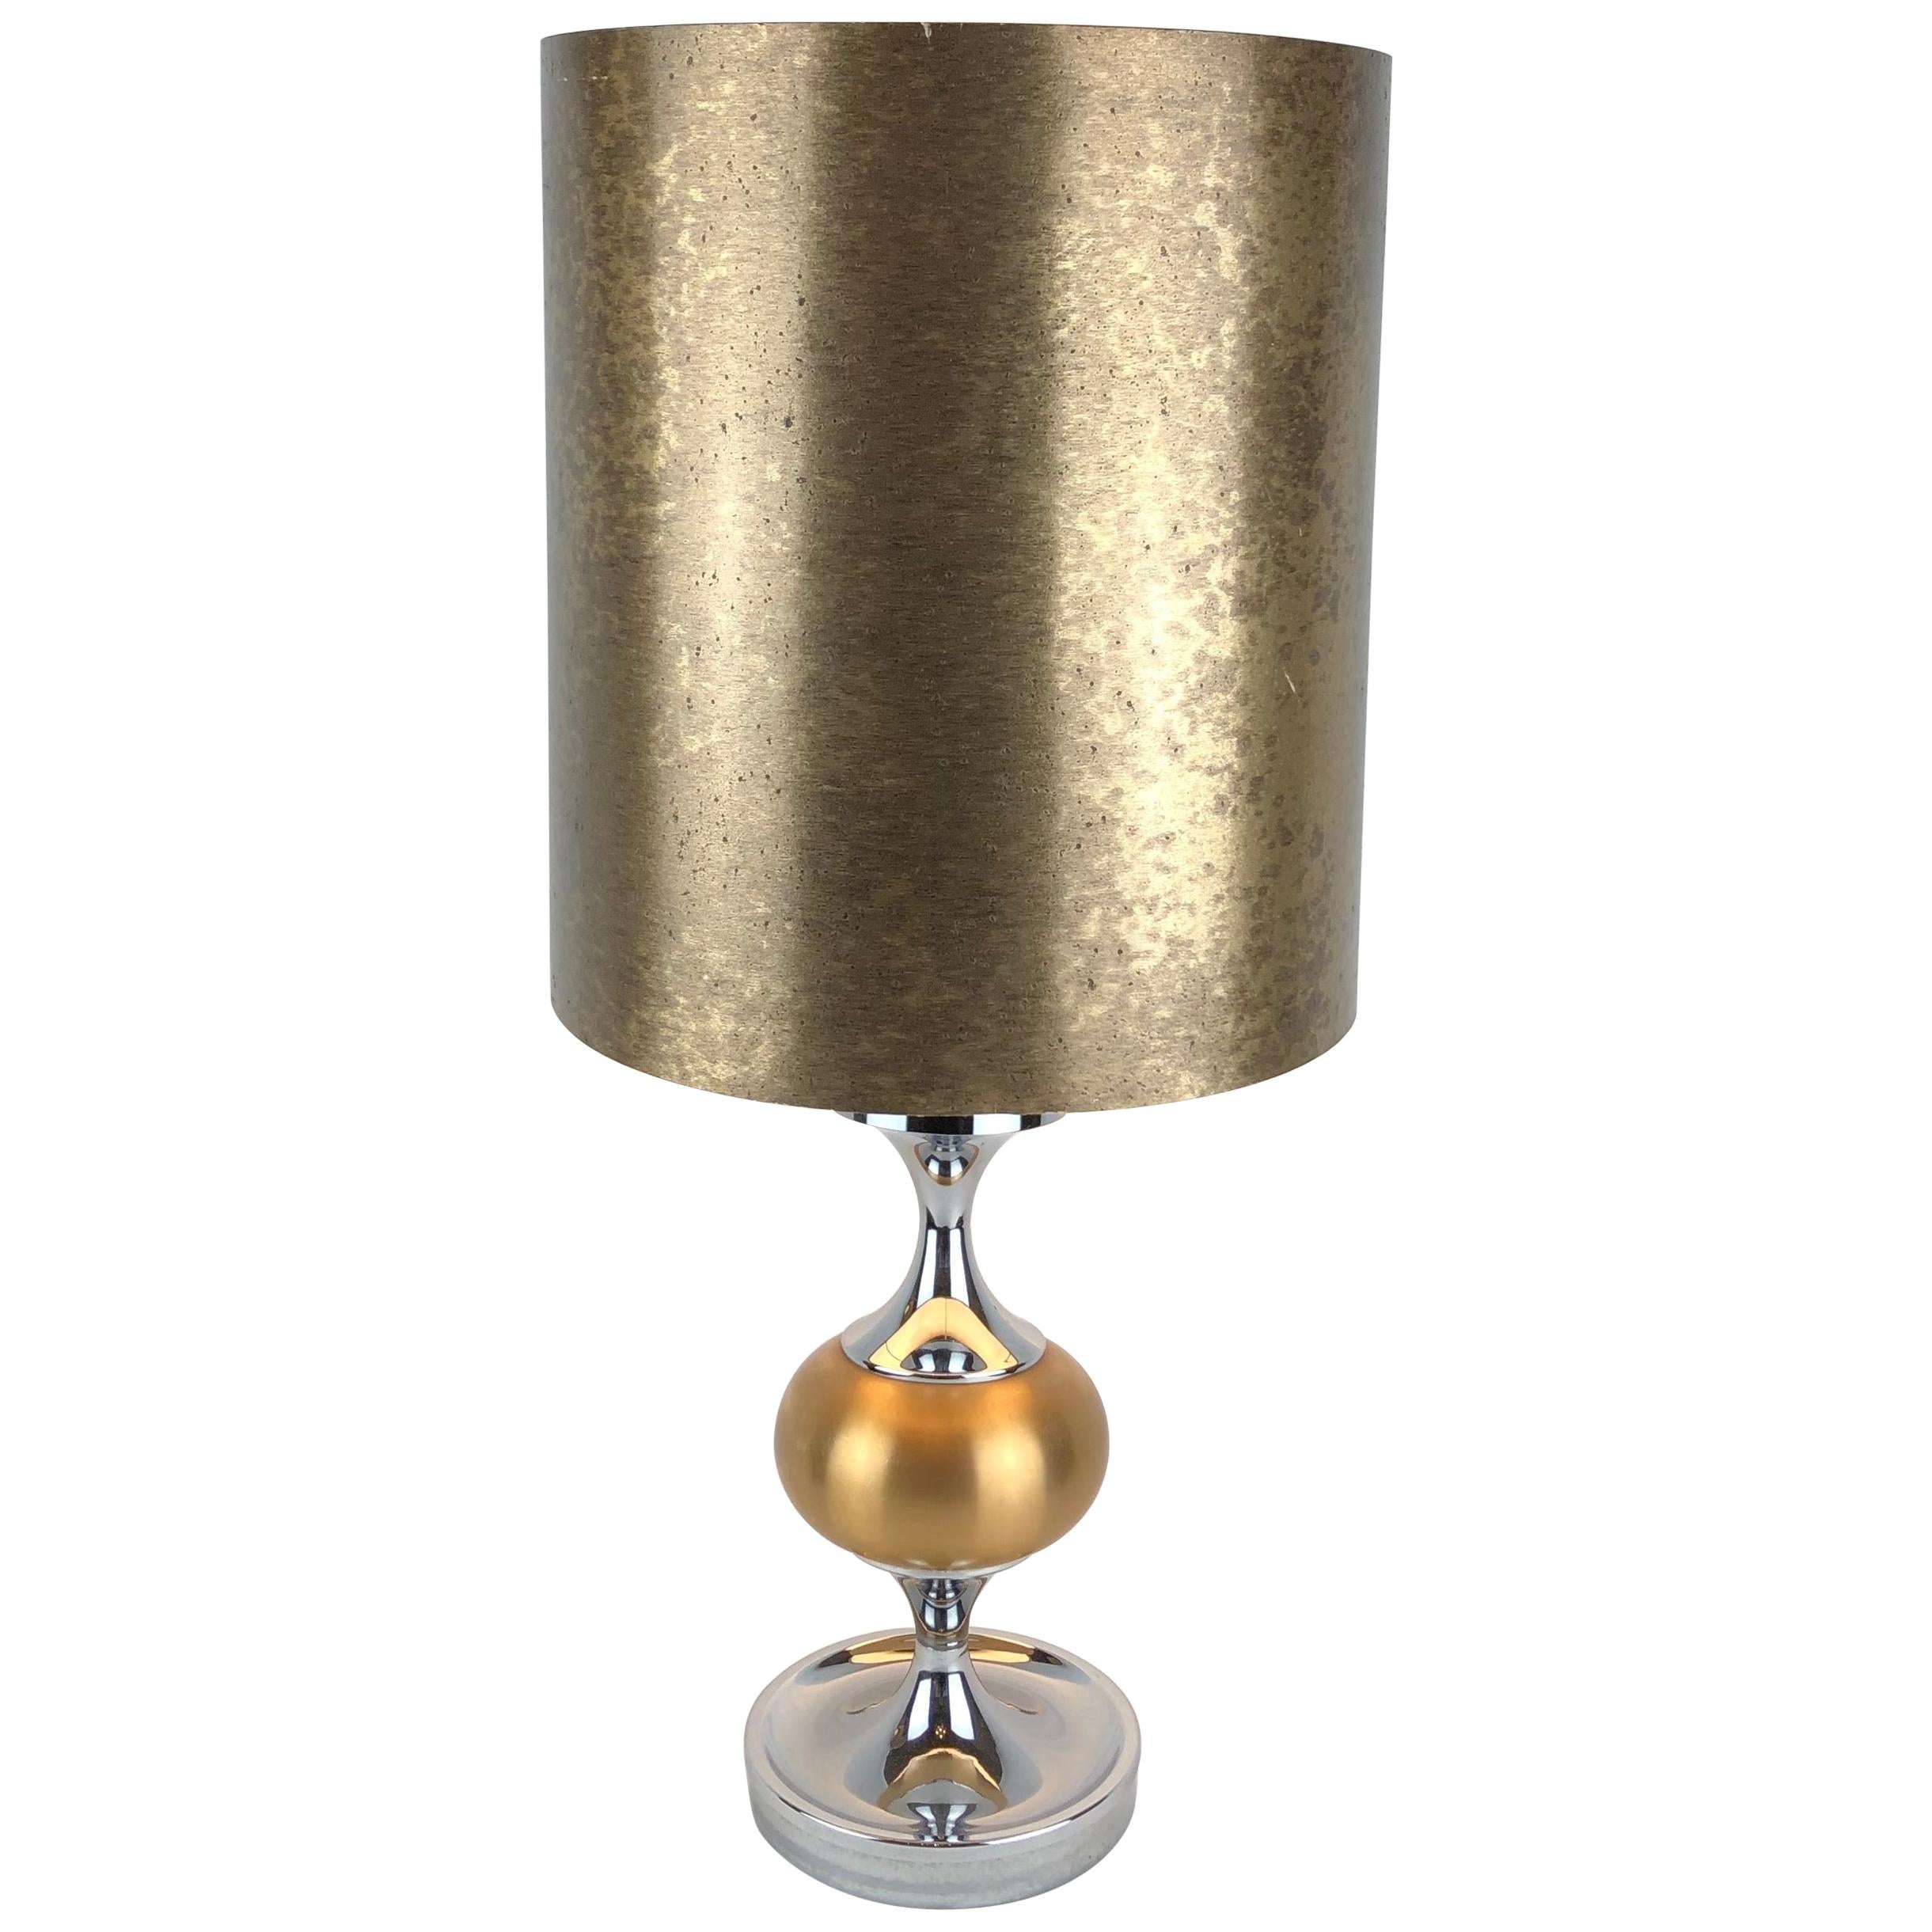 Tischlampe aus Chrom in Gold, von Maison Jansen inspiriert, Mid-Century